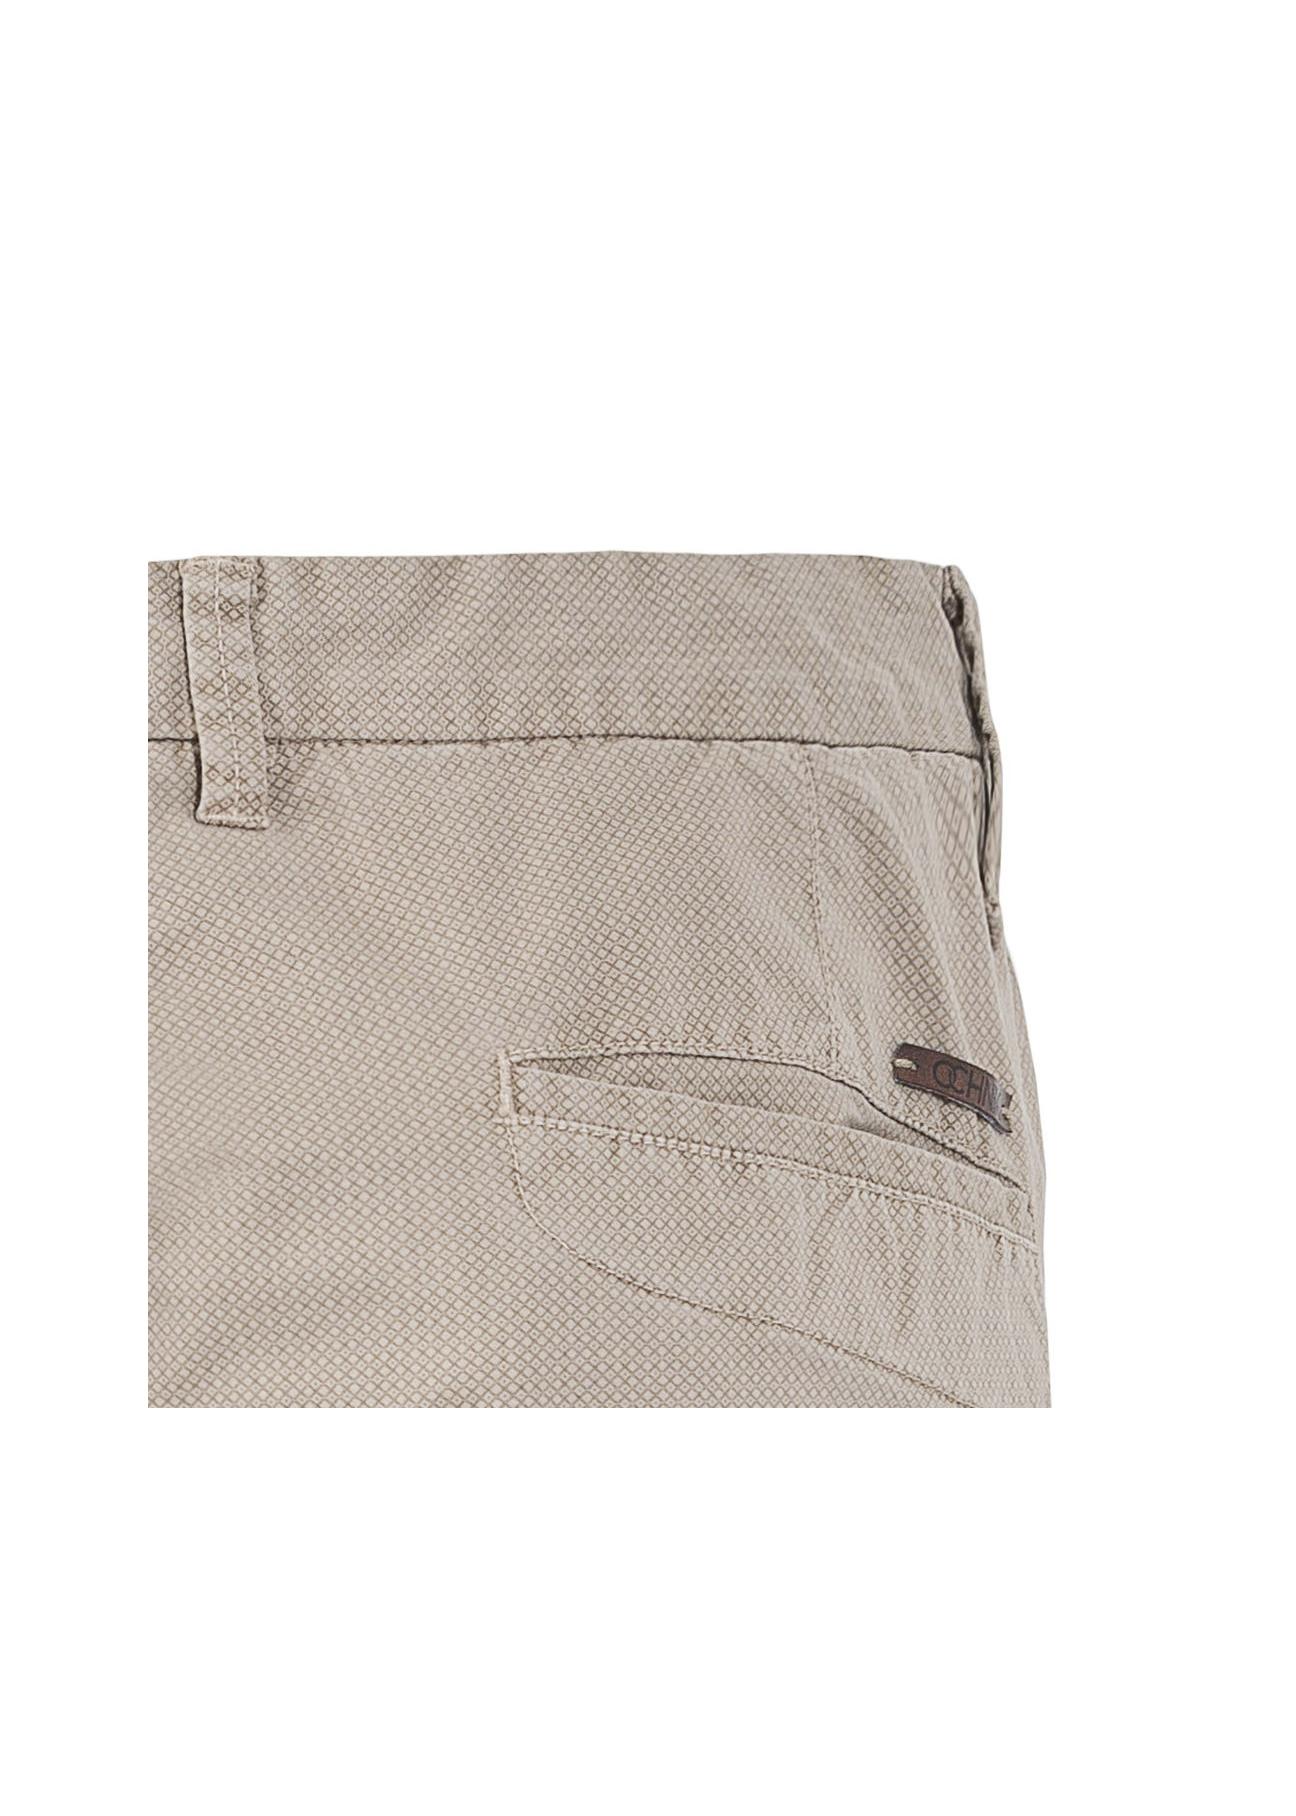 Spodnie męskie SPOMT-0036-81(W20)